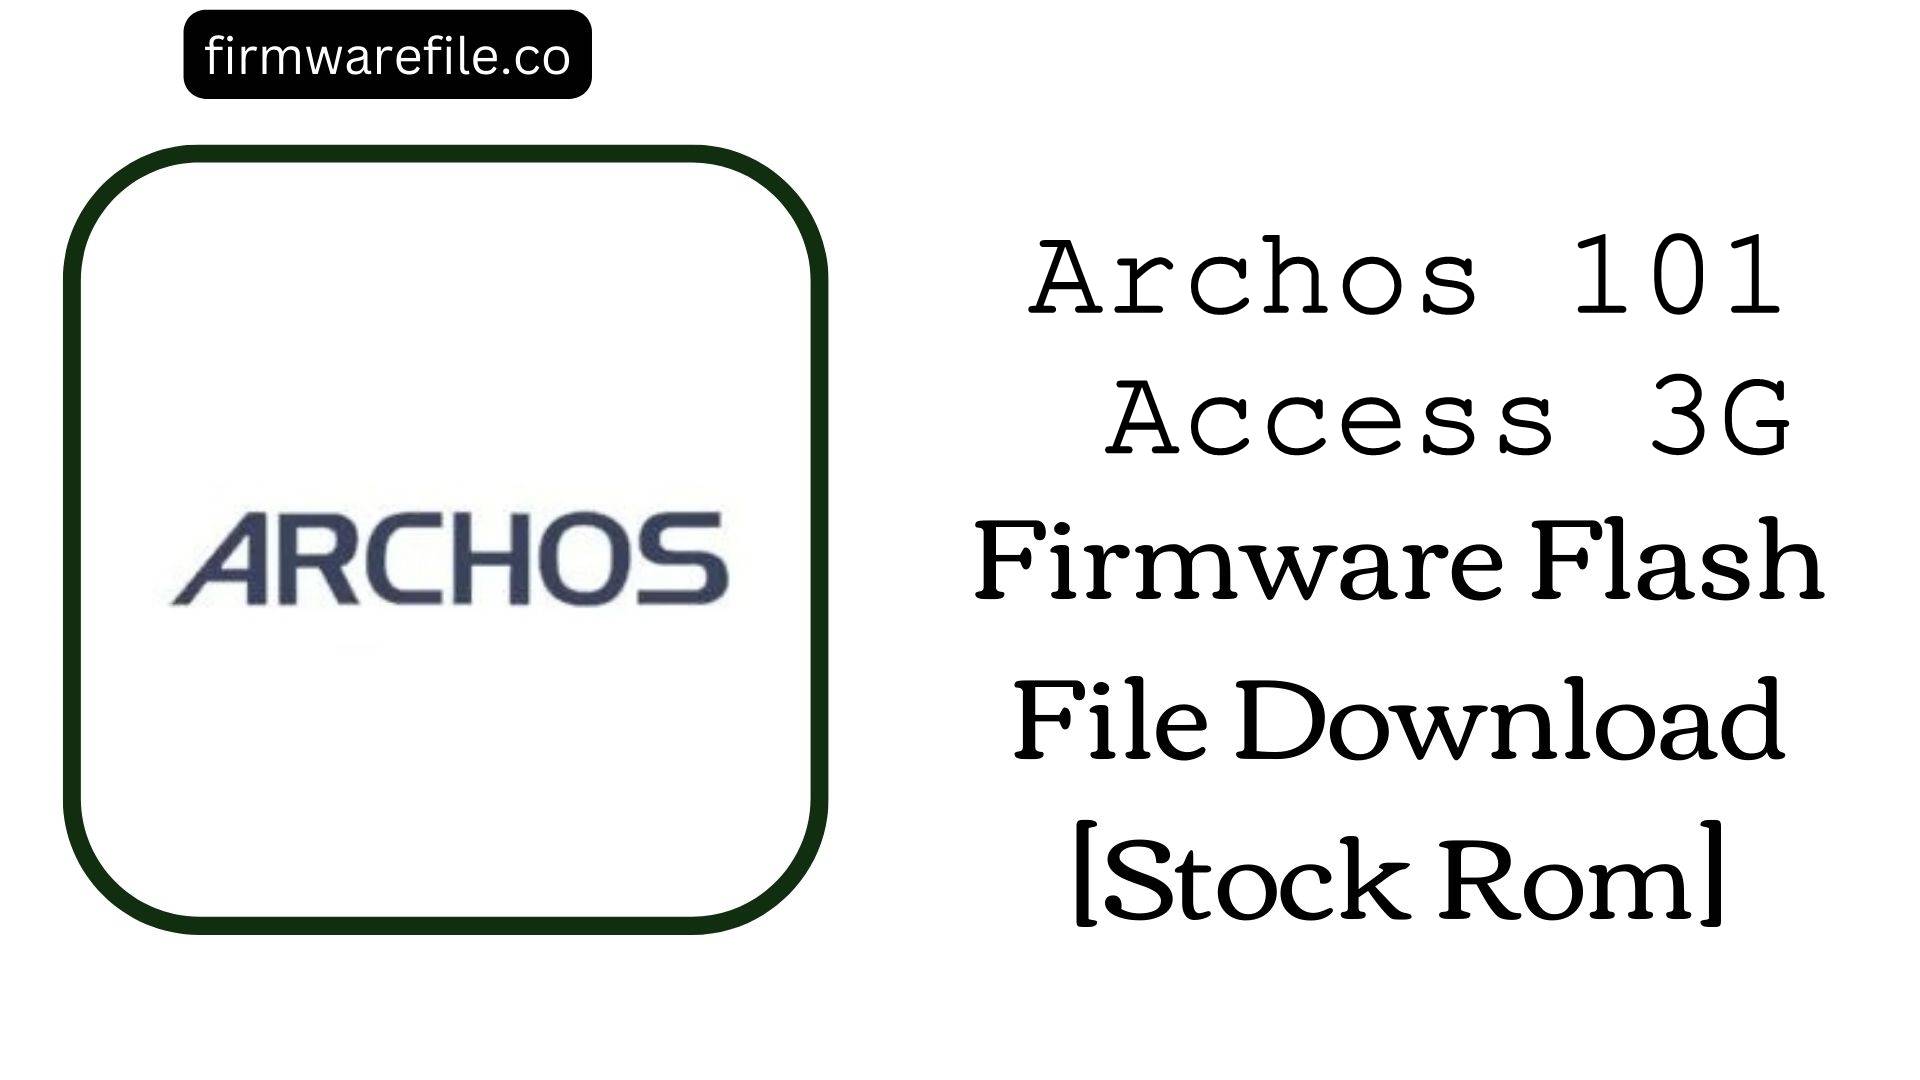 Archos 101 Access 3G